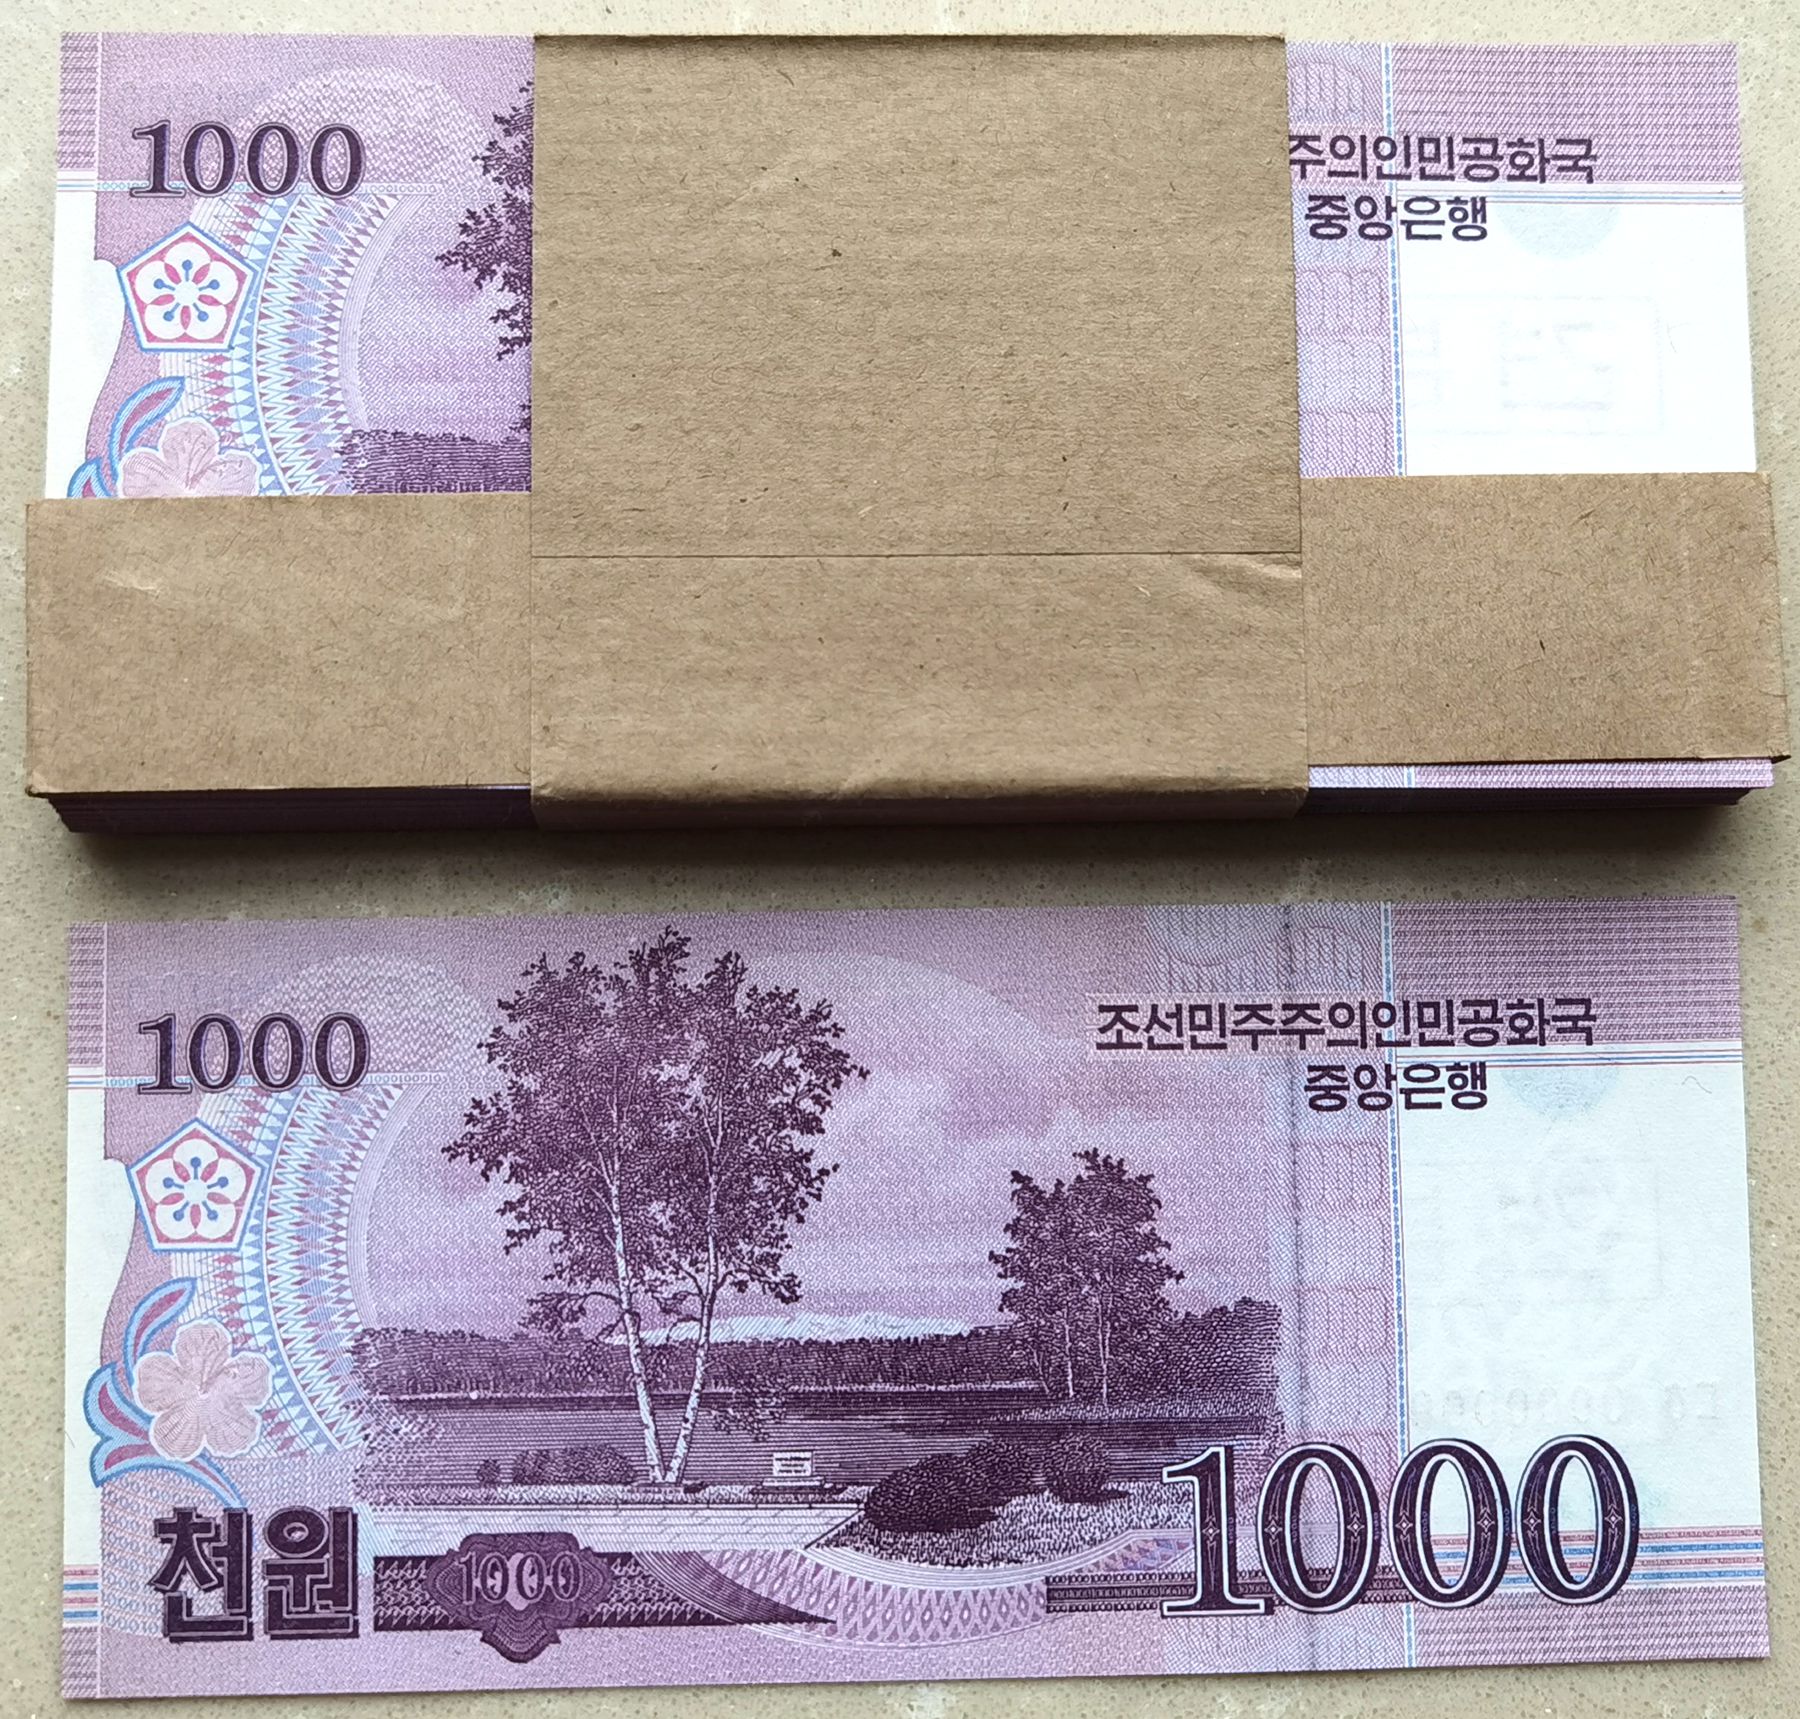 L1323, Bundle 100 Pcs, S Korea 2008 Specimen 1000 Won Banknote, Series 0000000